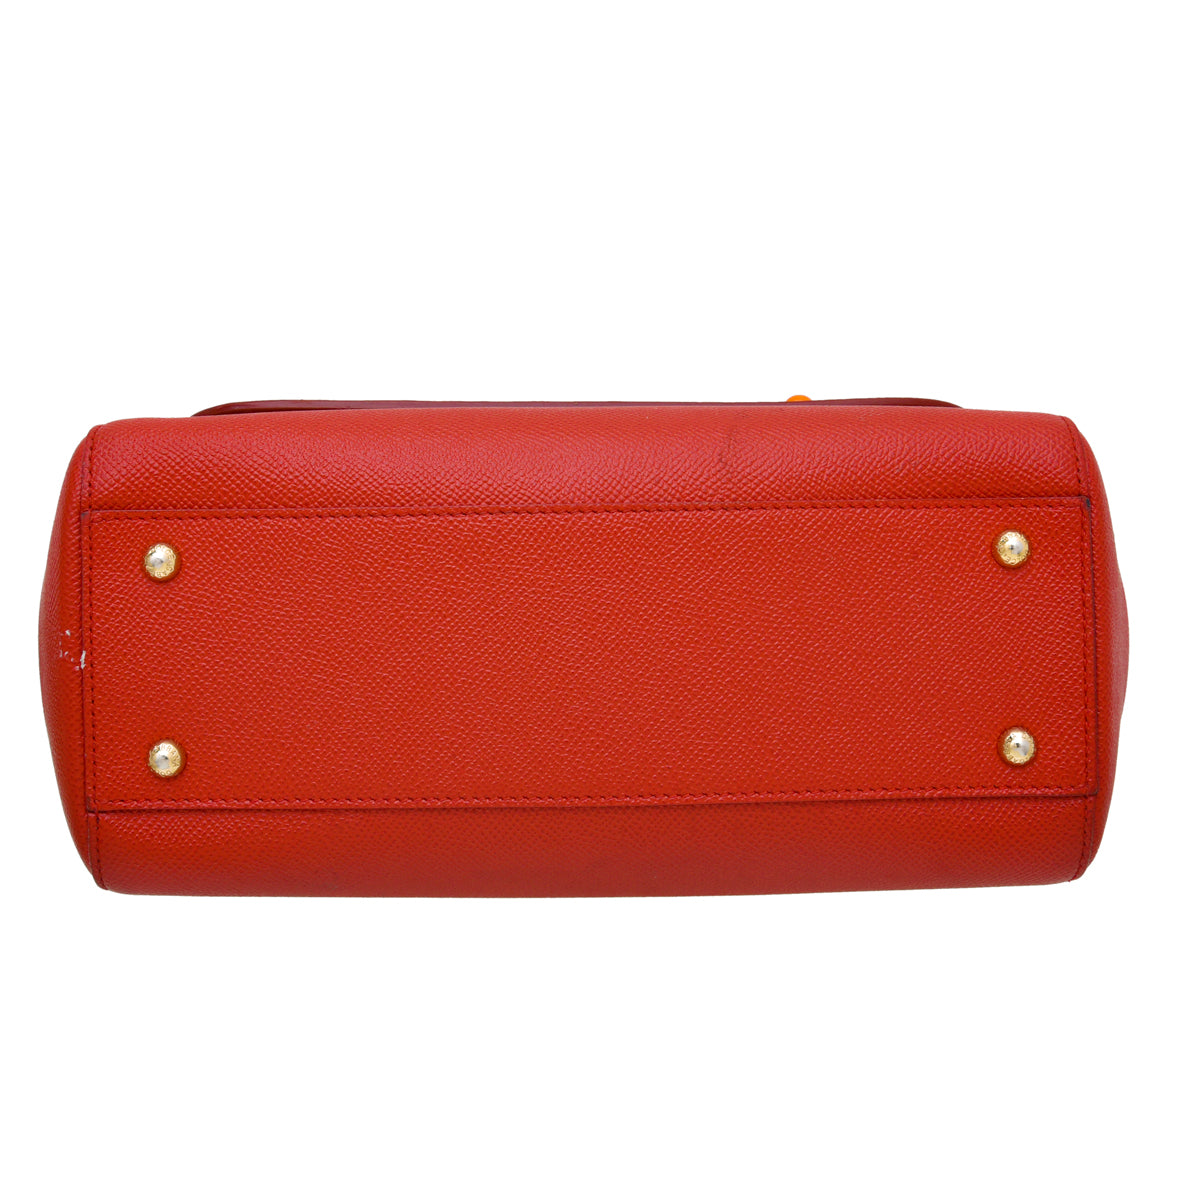 Dolce & Gabbana Red #DG Family Sicily Medium Bag